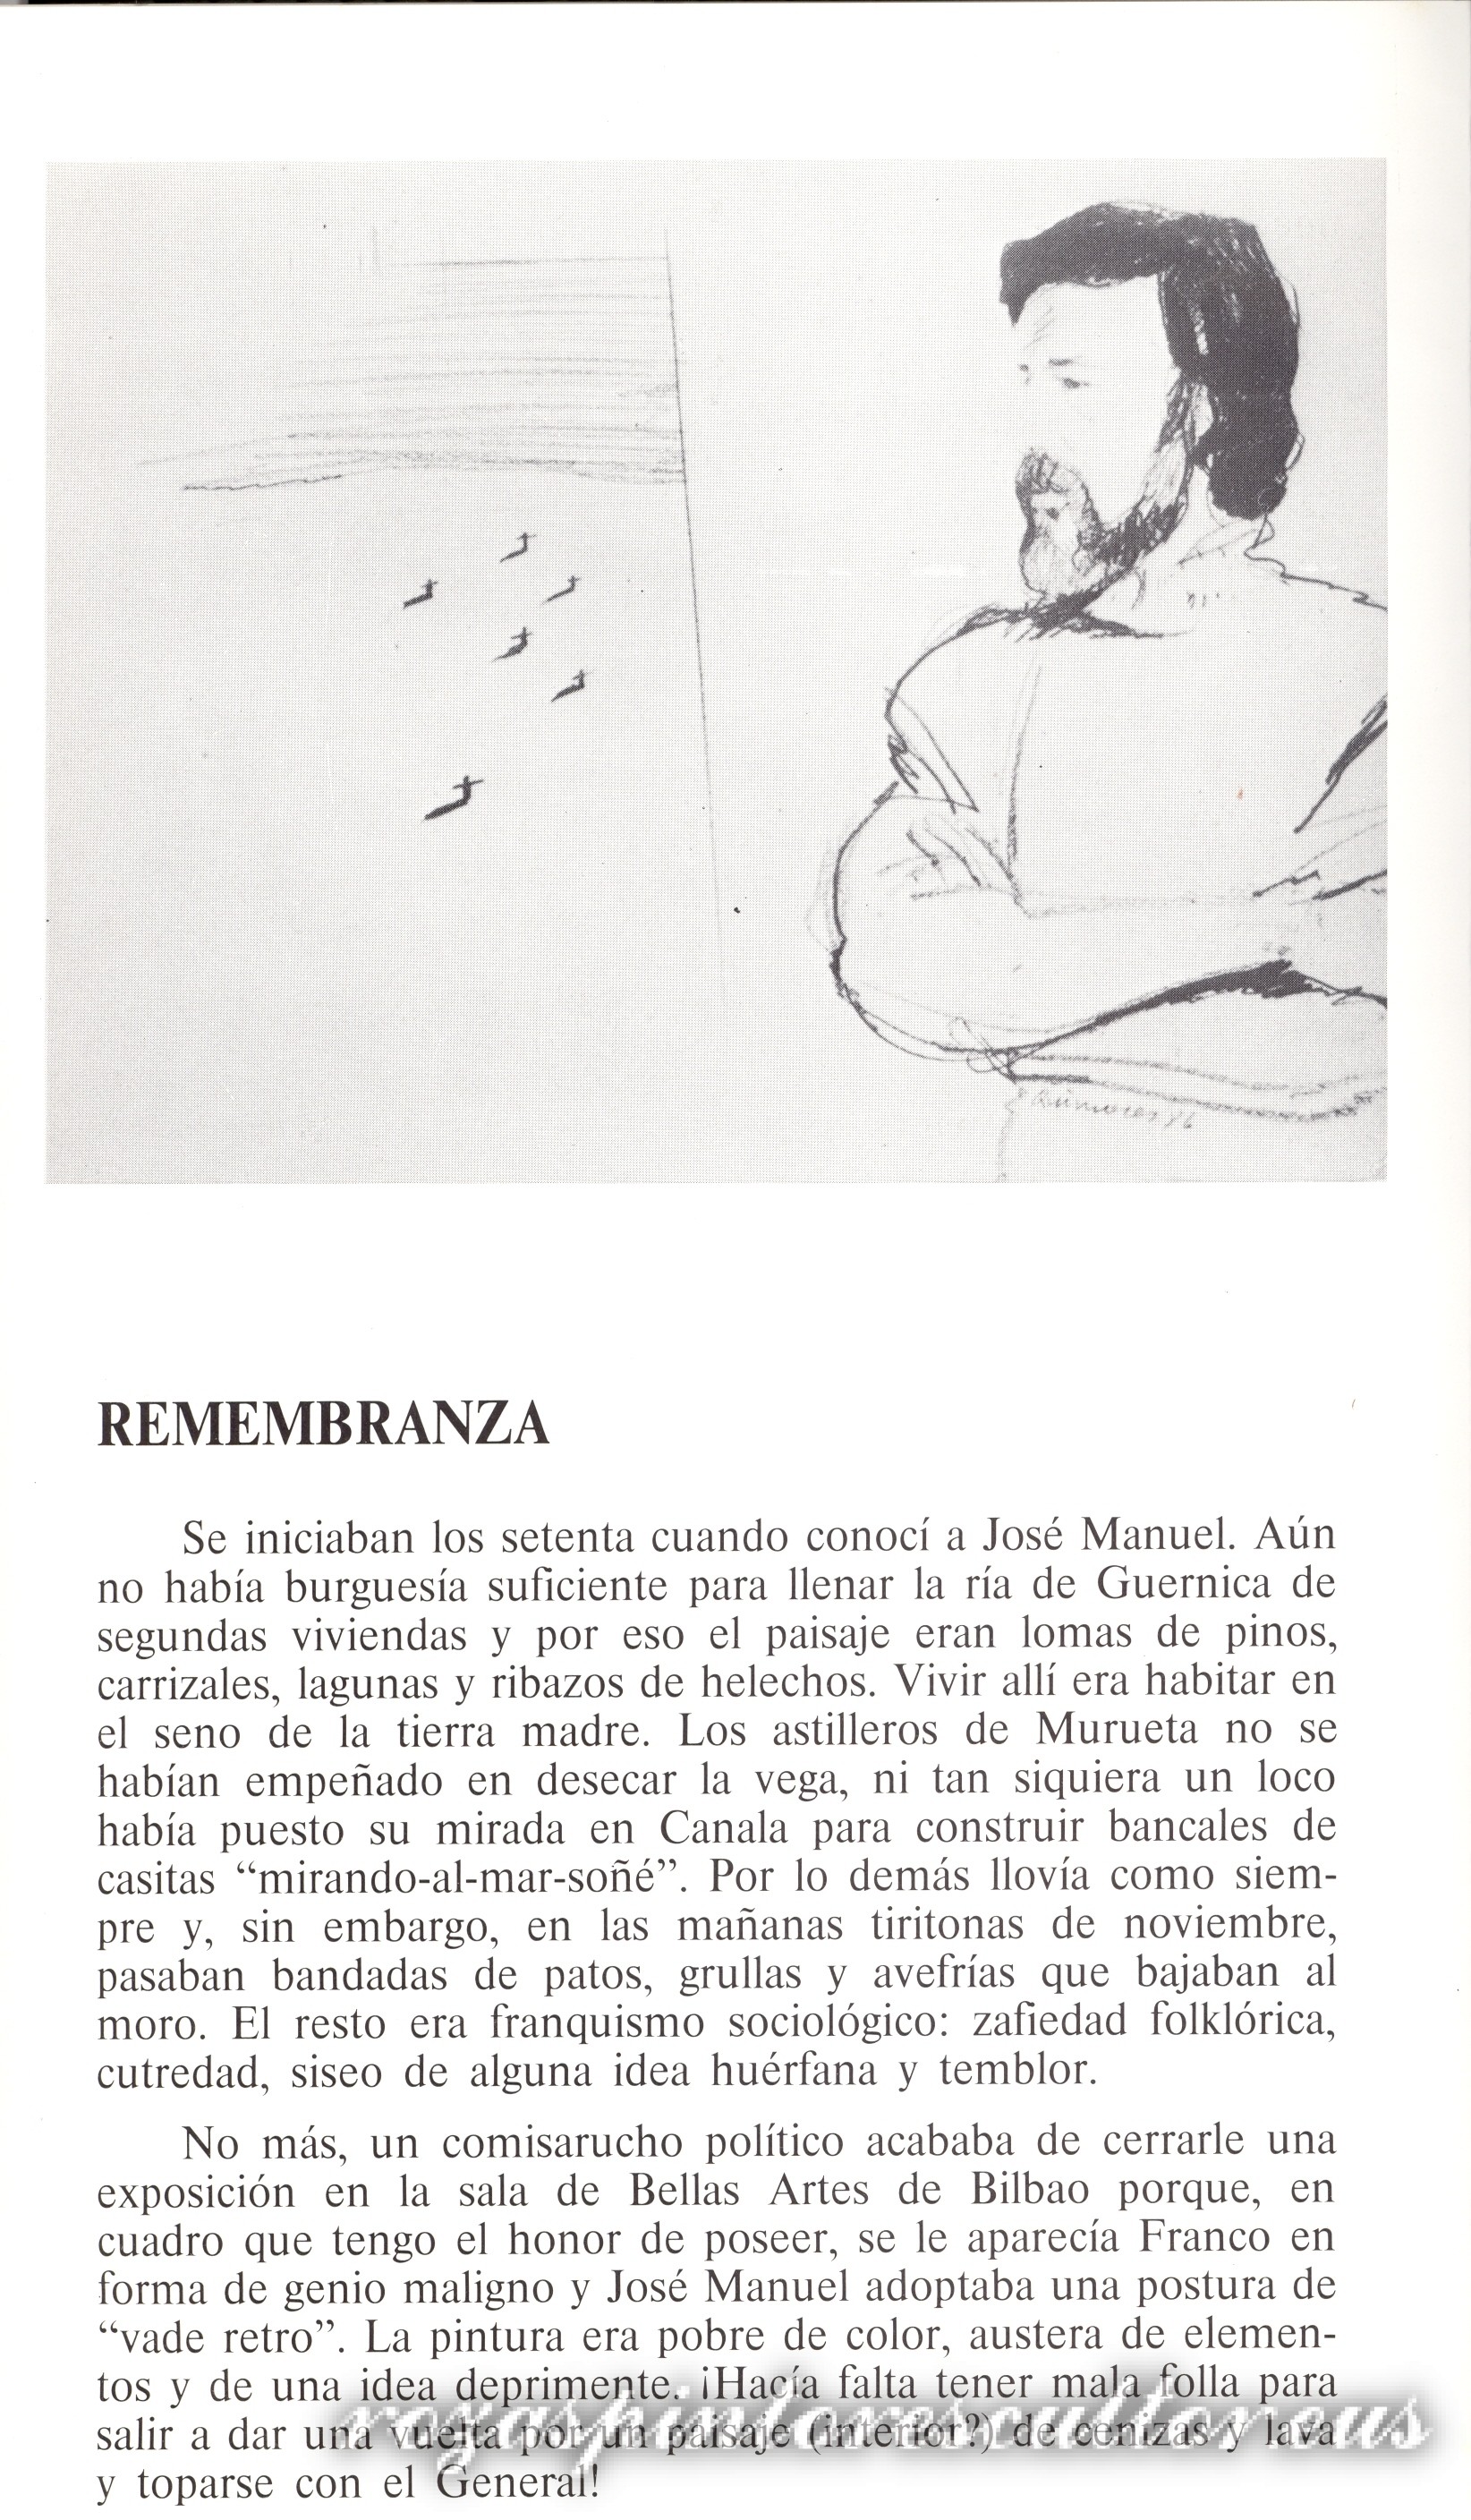 1988 Oroitzapena – Luis Lopez de Dicastillo